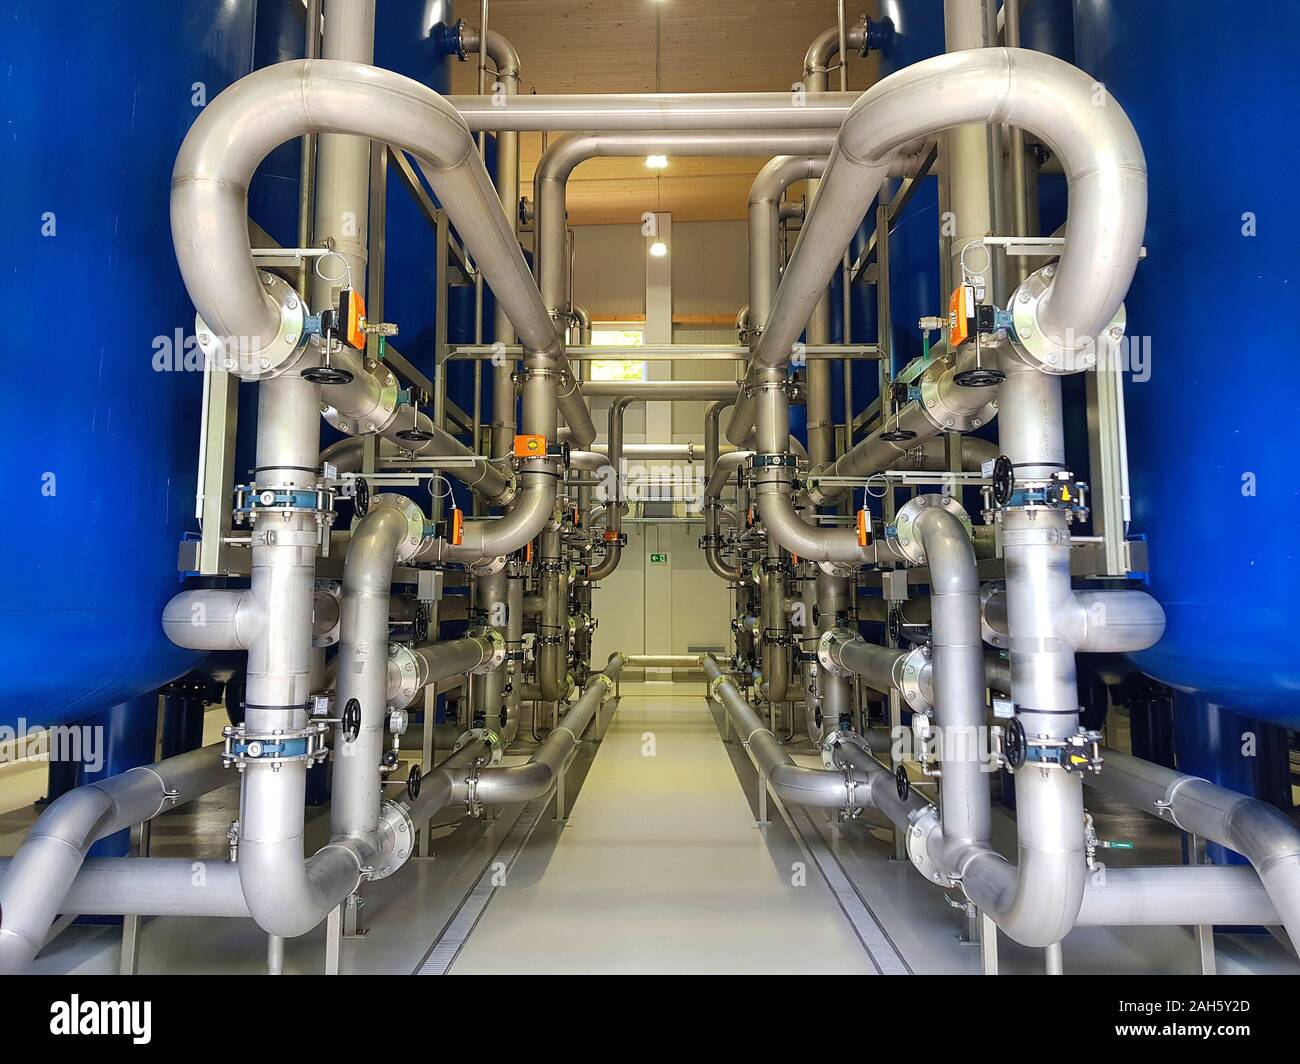 https://c8.alamy.com/compde/2ah5y2d/osterreich-filteranlage-zur-trinkwasseraufbereitung-osterreich-trinkwasser-treatmant-in-niederosterreich-2ah5y2d.jpg